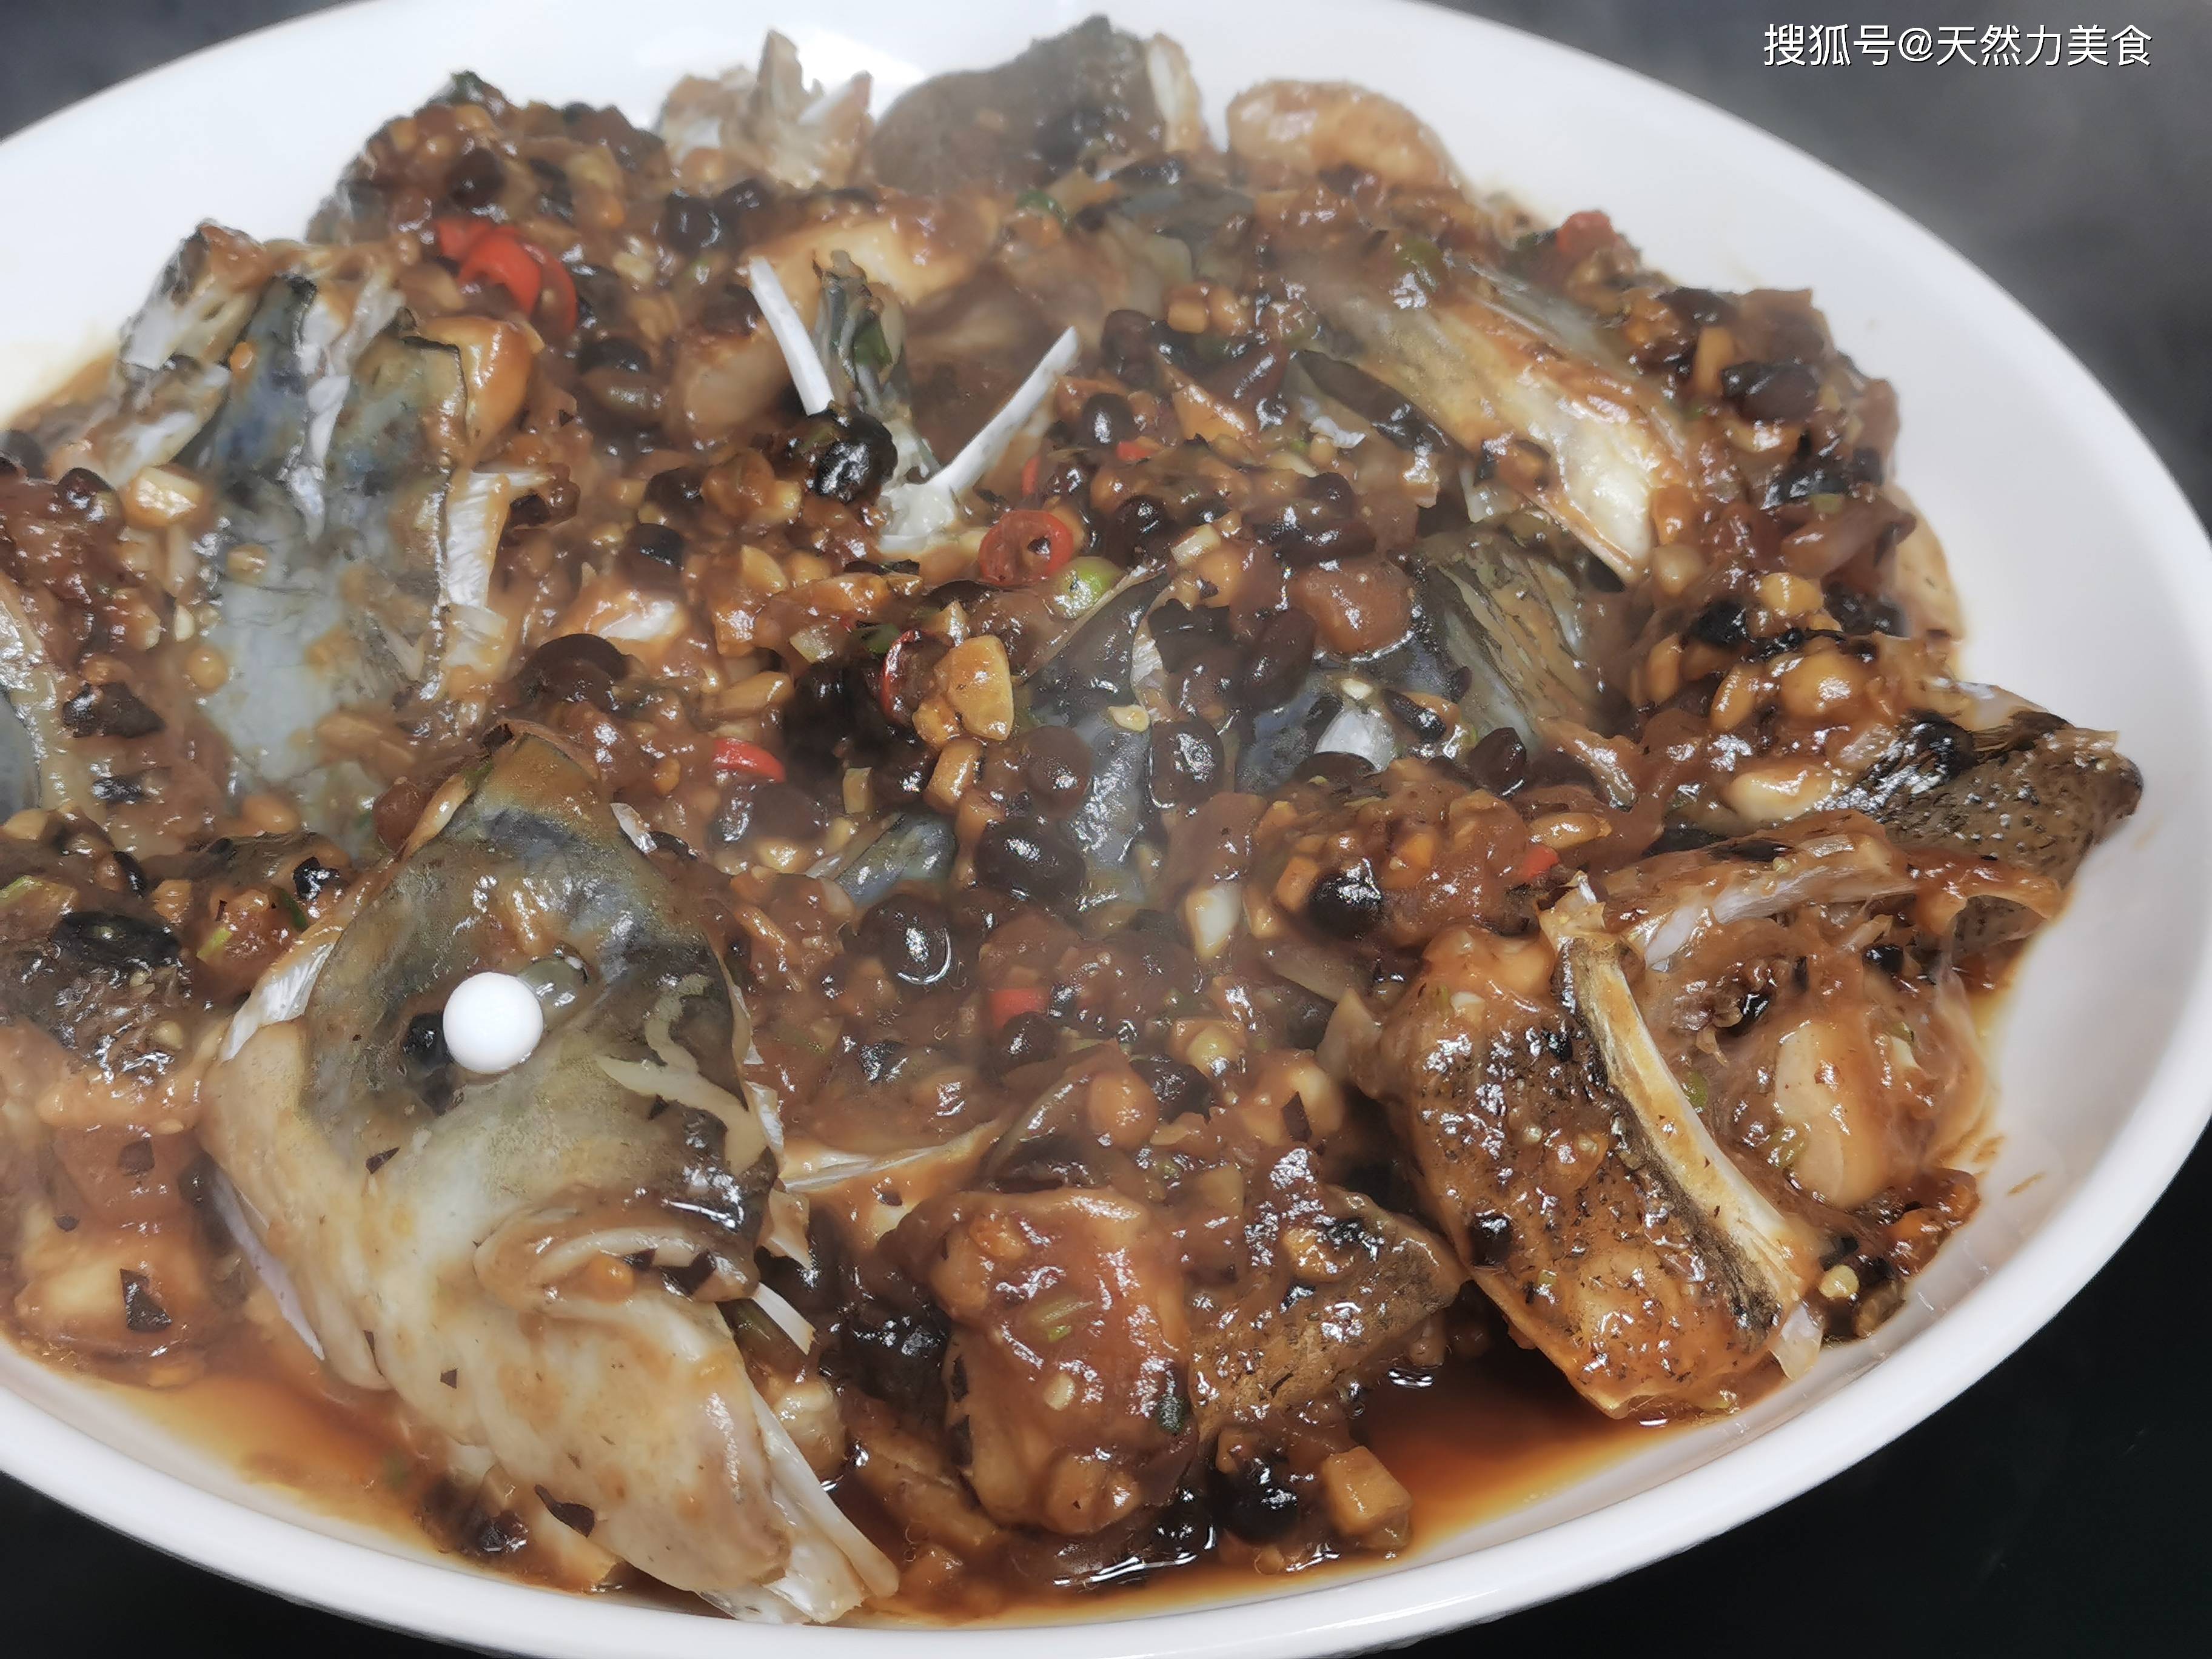 传统粤菜的豉汁蒸鱼头,家常做法,不柴,不腥,豉香味浓鲜滑嫩美